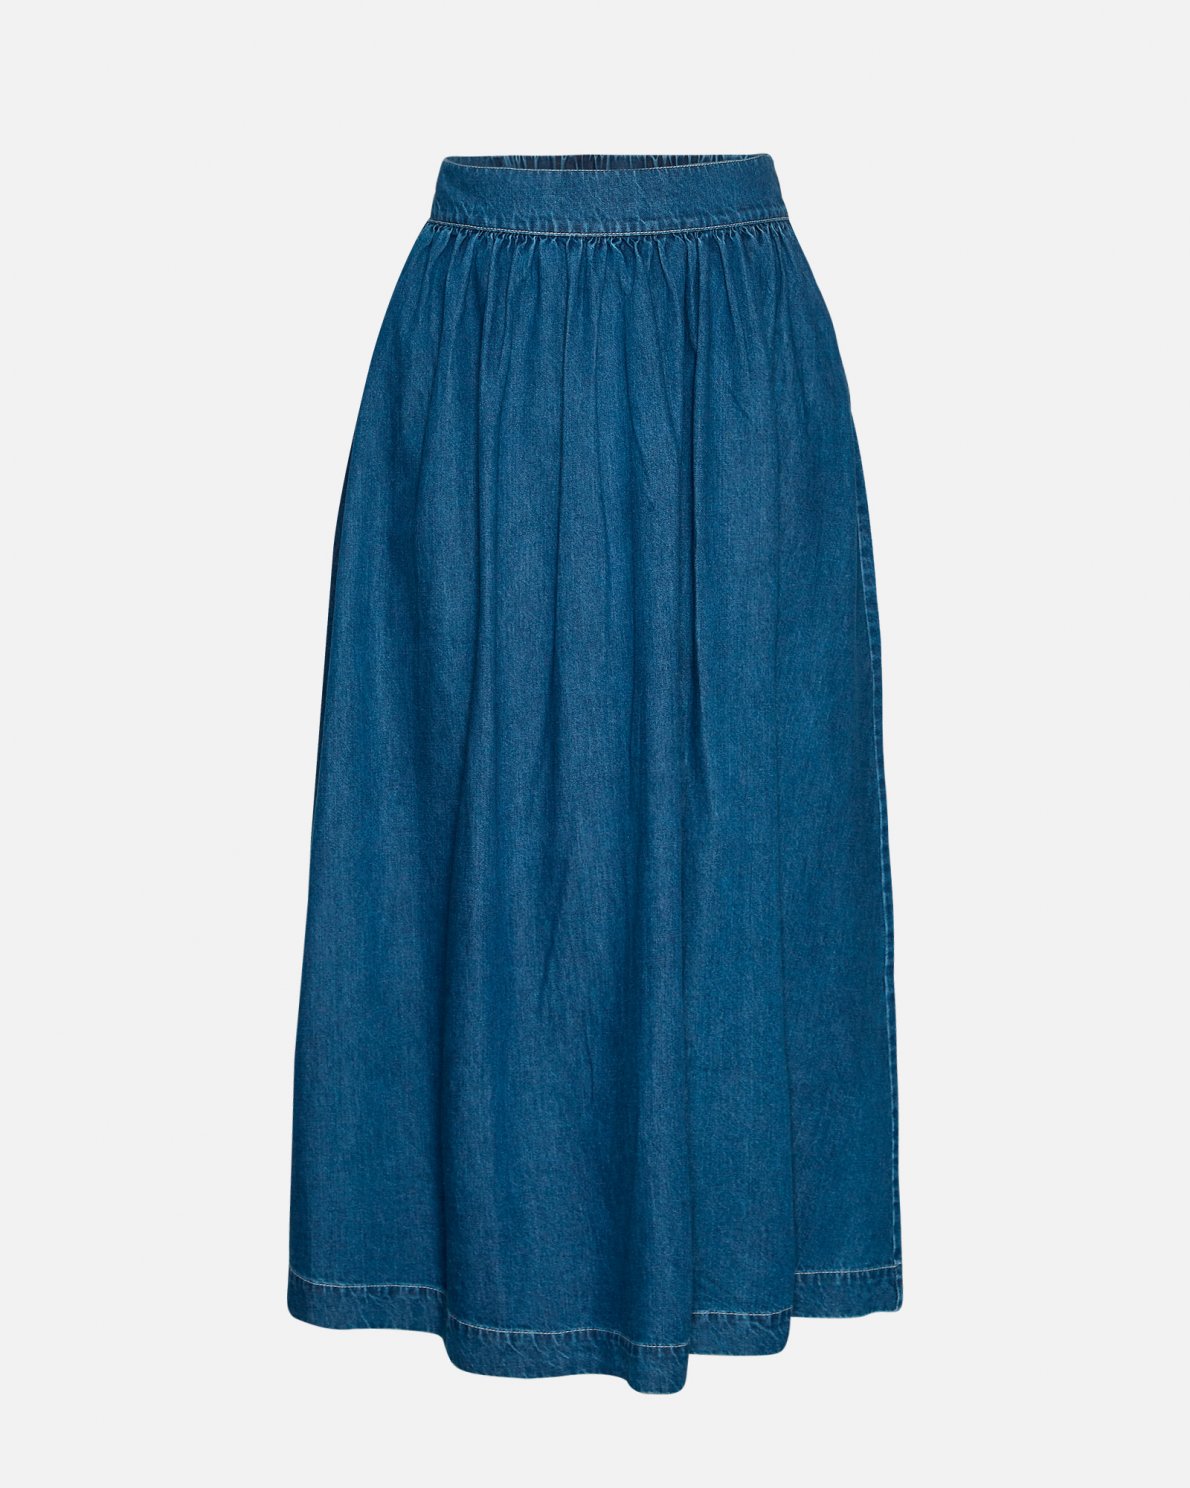 Shayla Denim Maxi Skirt in Midblue